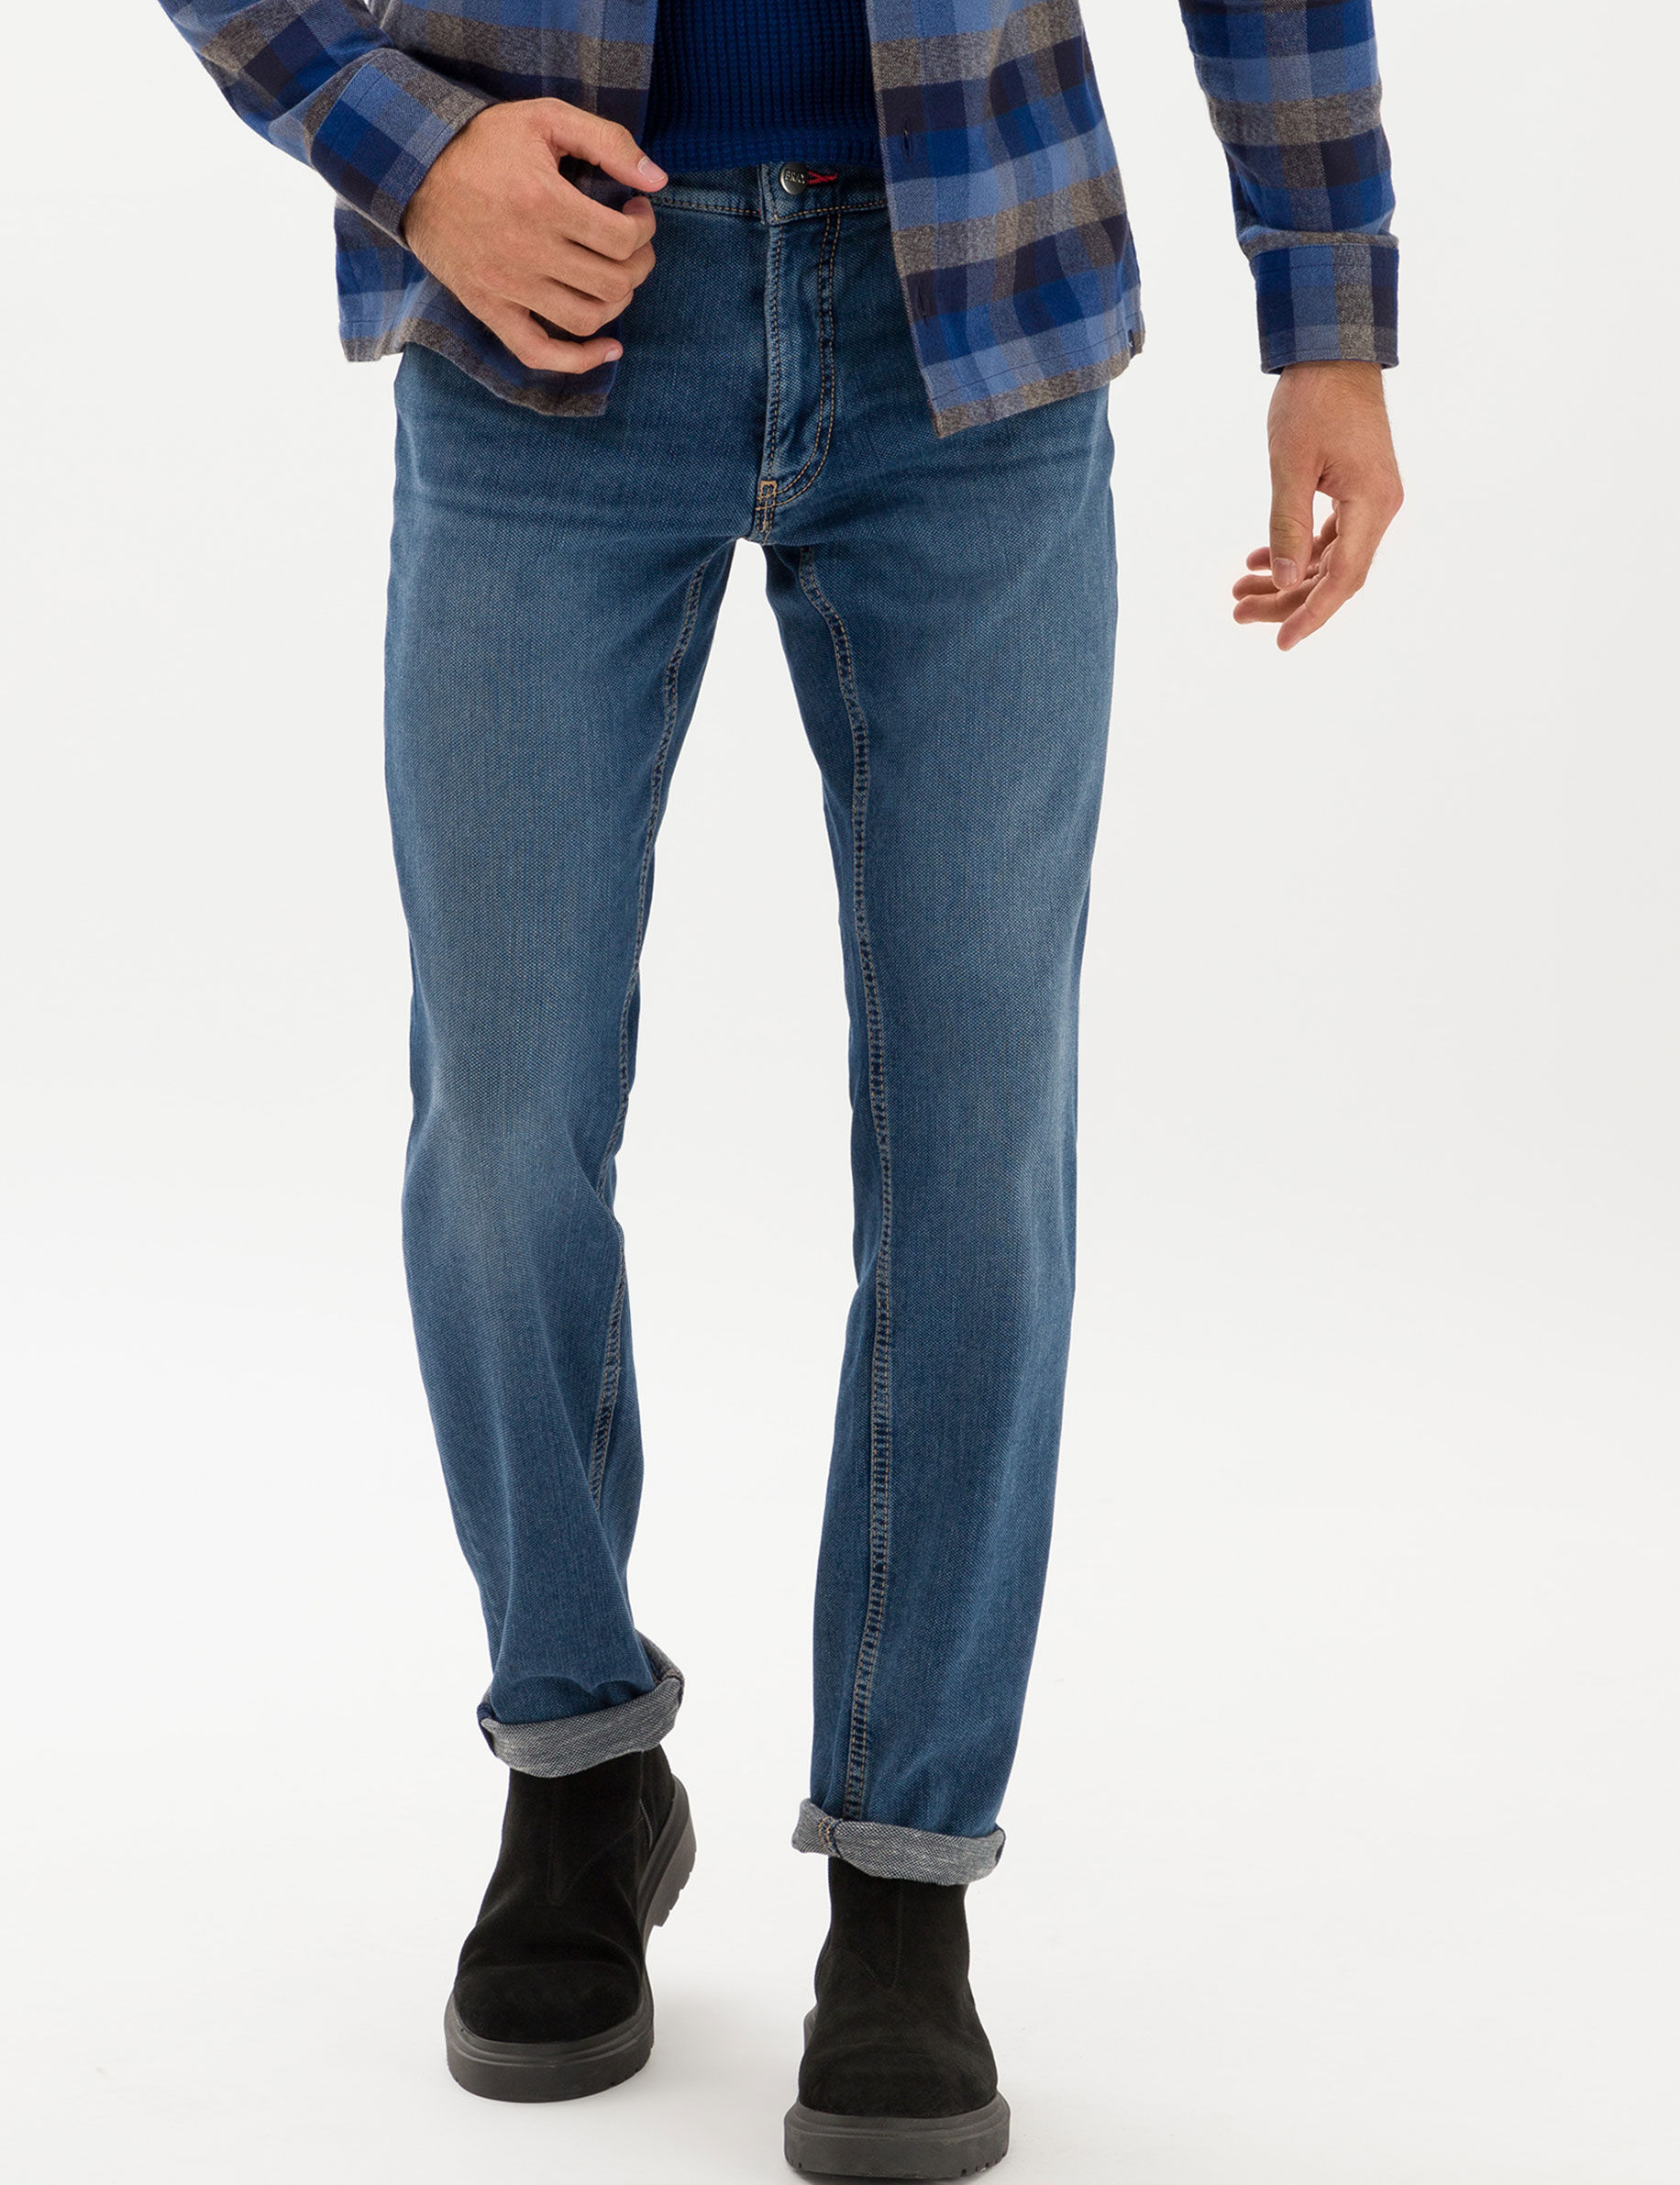 Tøj til mænd Jeans køb og bestil hos BRAX